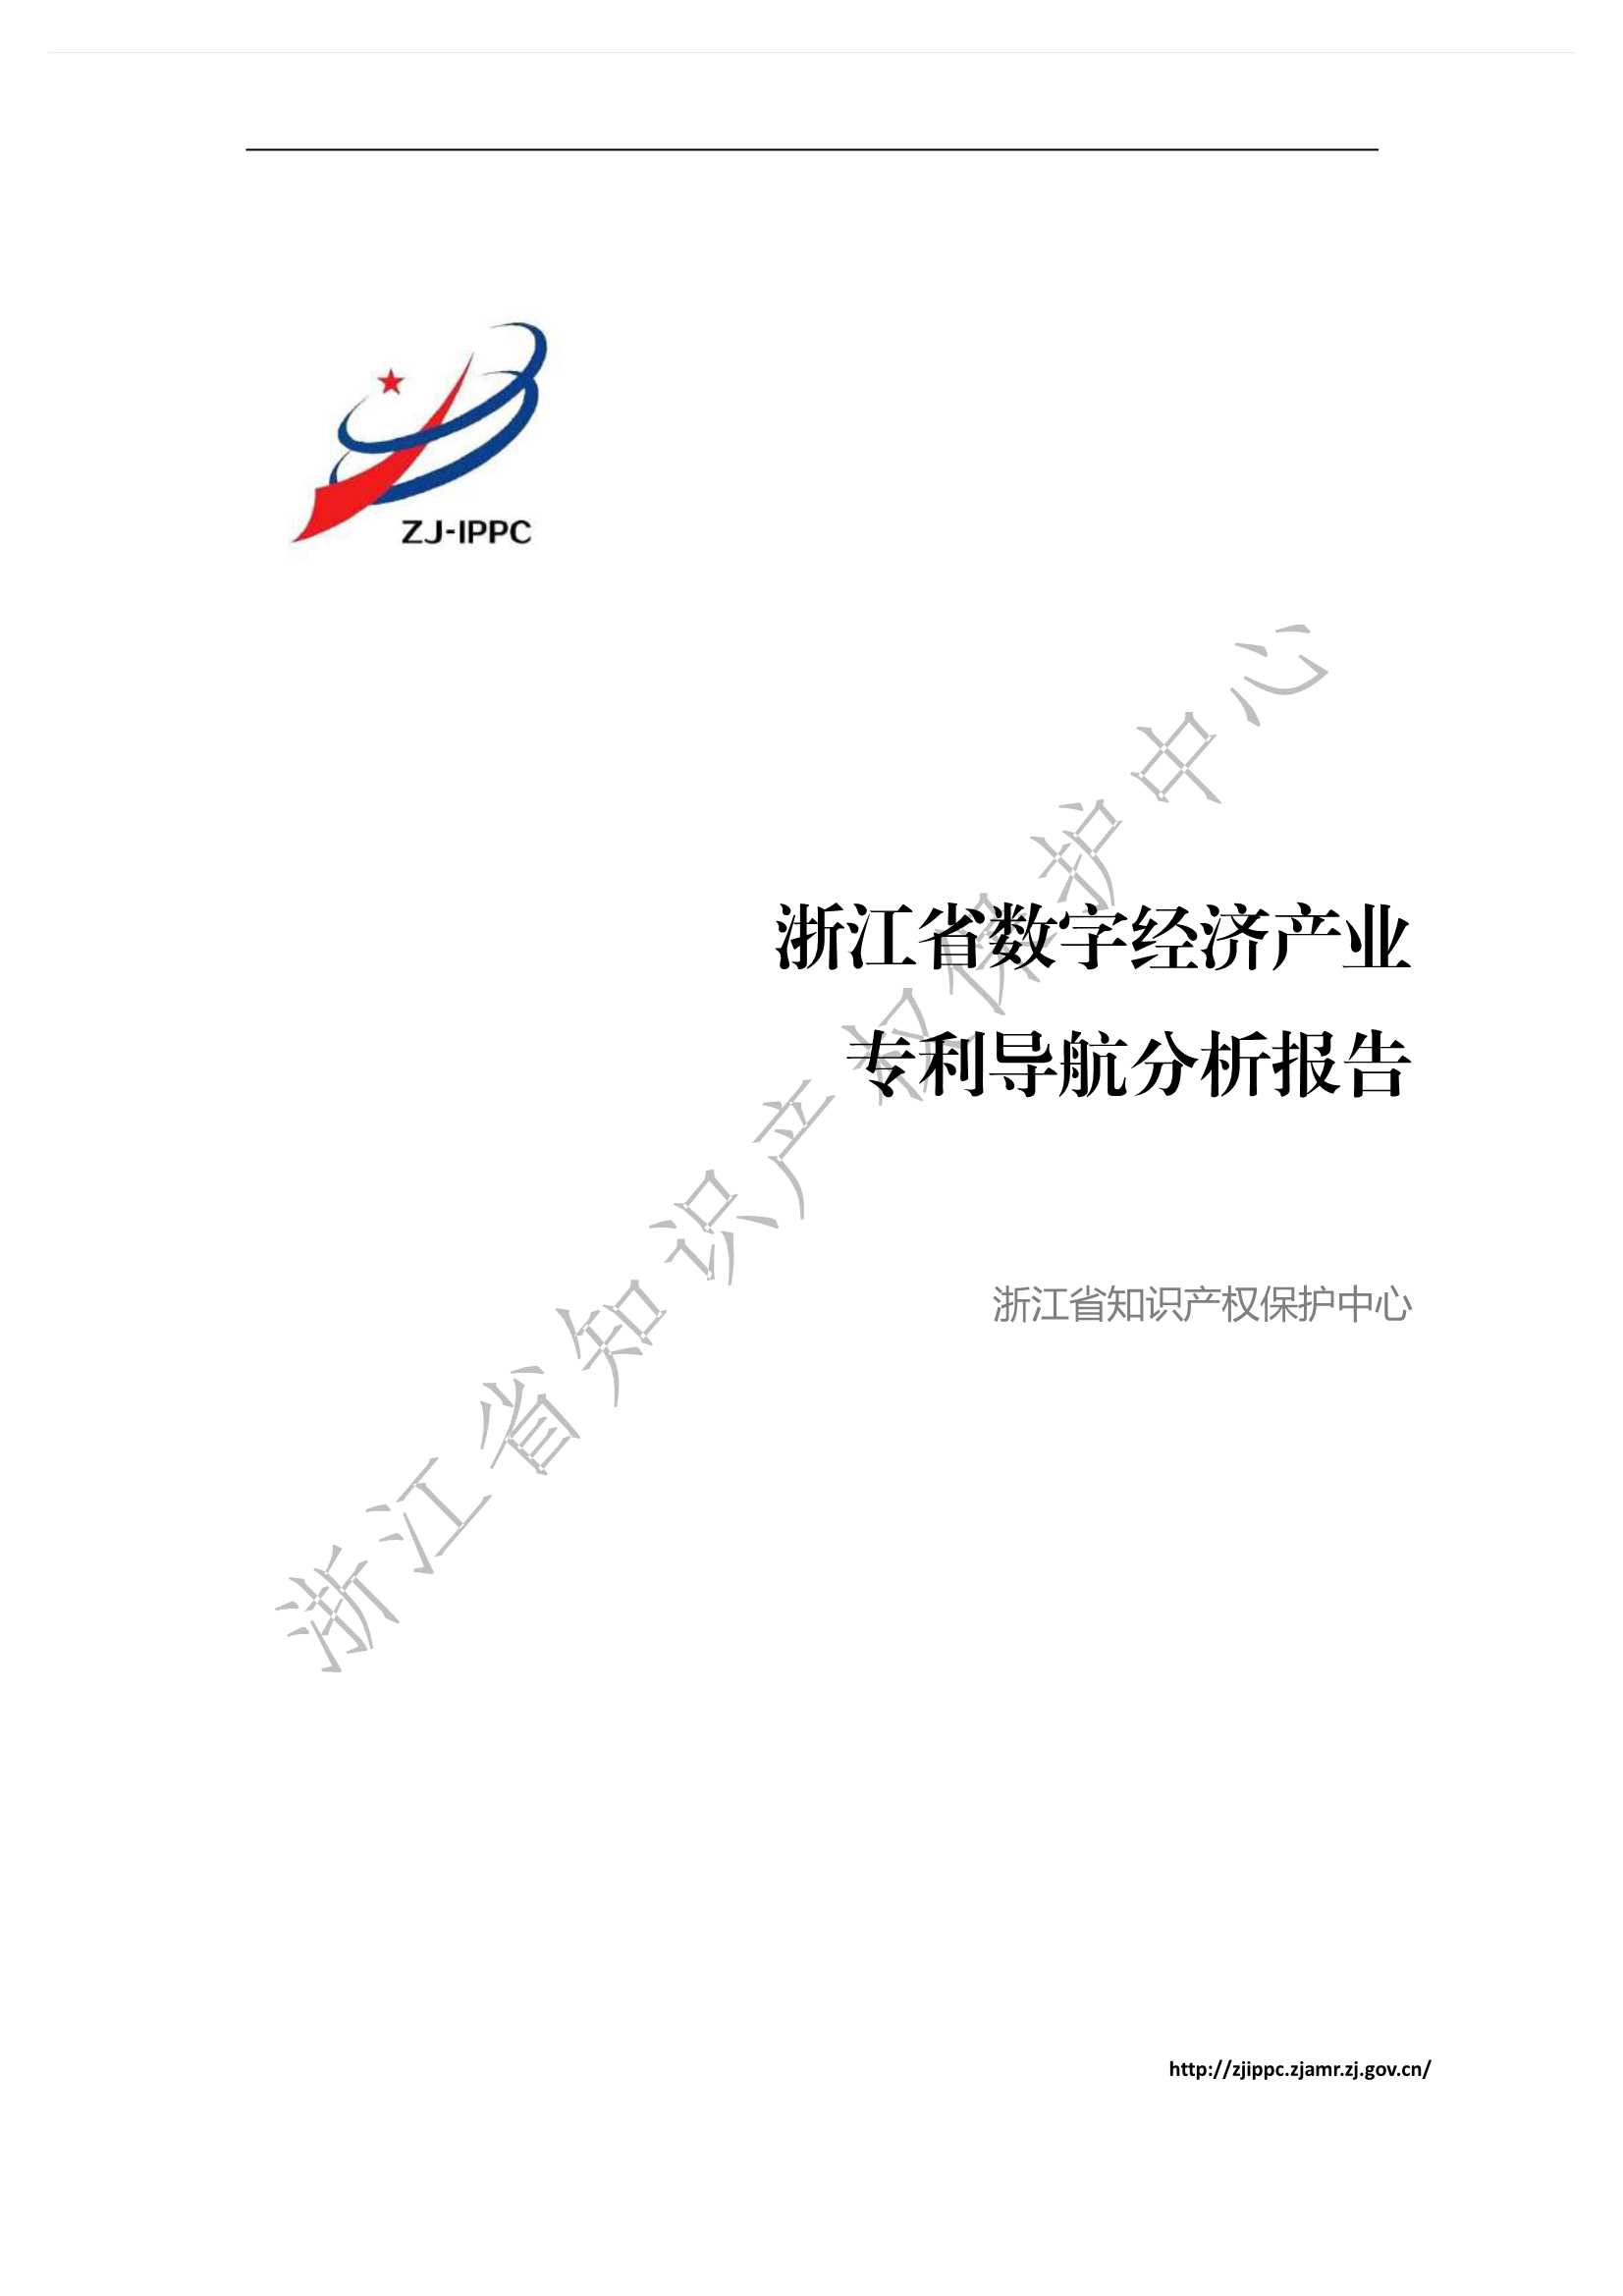 浙江省数字经济产业专利导航分析报告-2021.12-46页